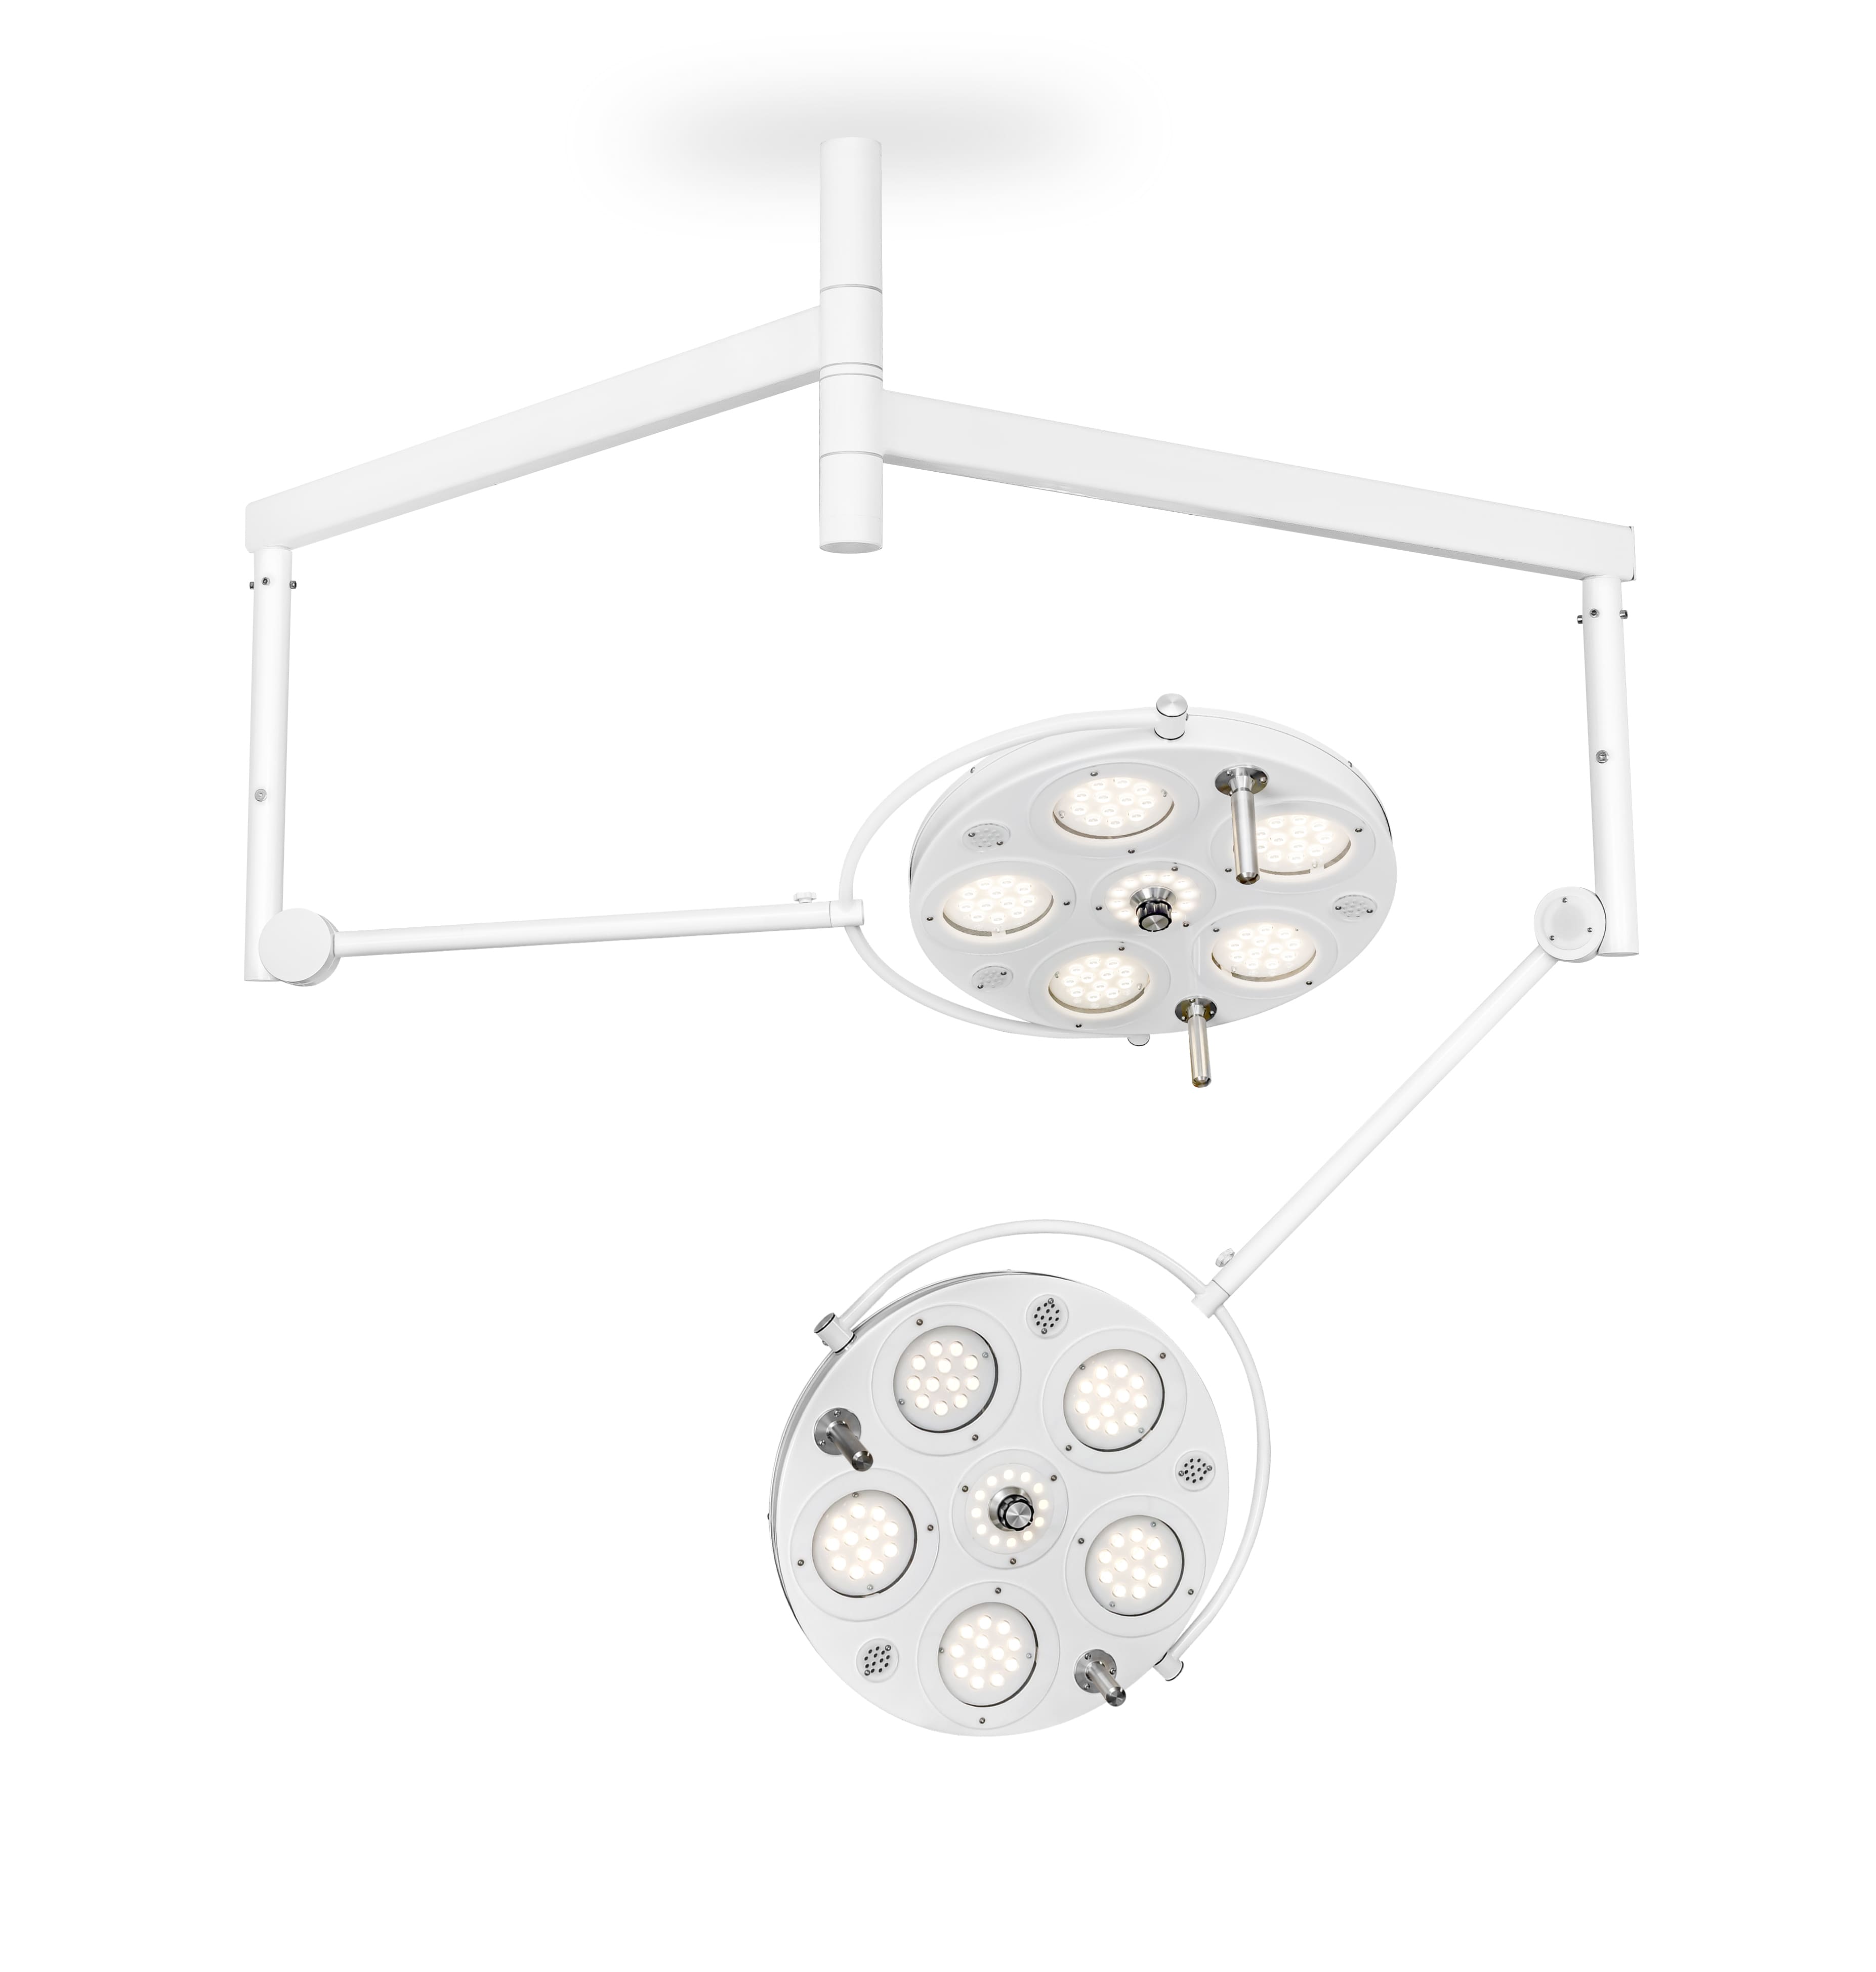 Медицинский двухкупольный хирургический светильник «FotonFly 6М6М», потолочный подвес - FotonFly 6М6М